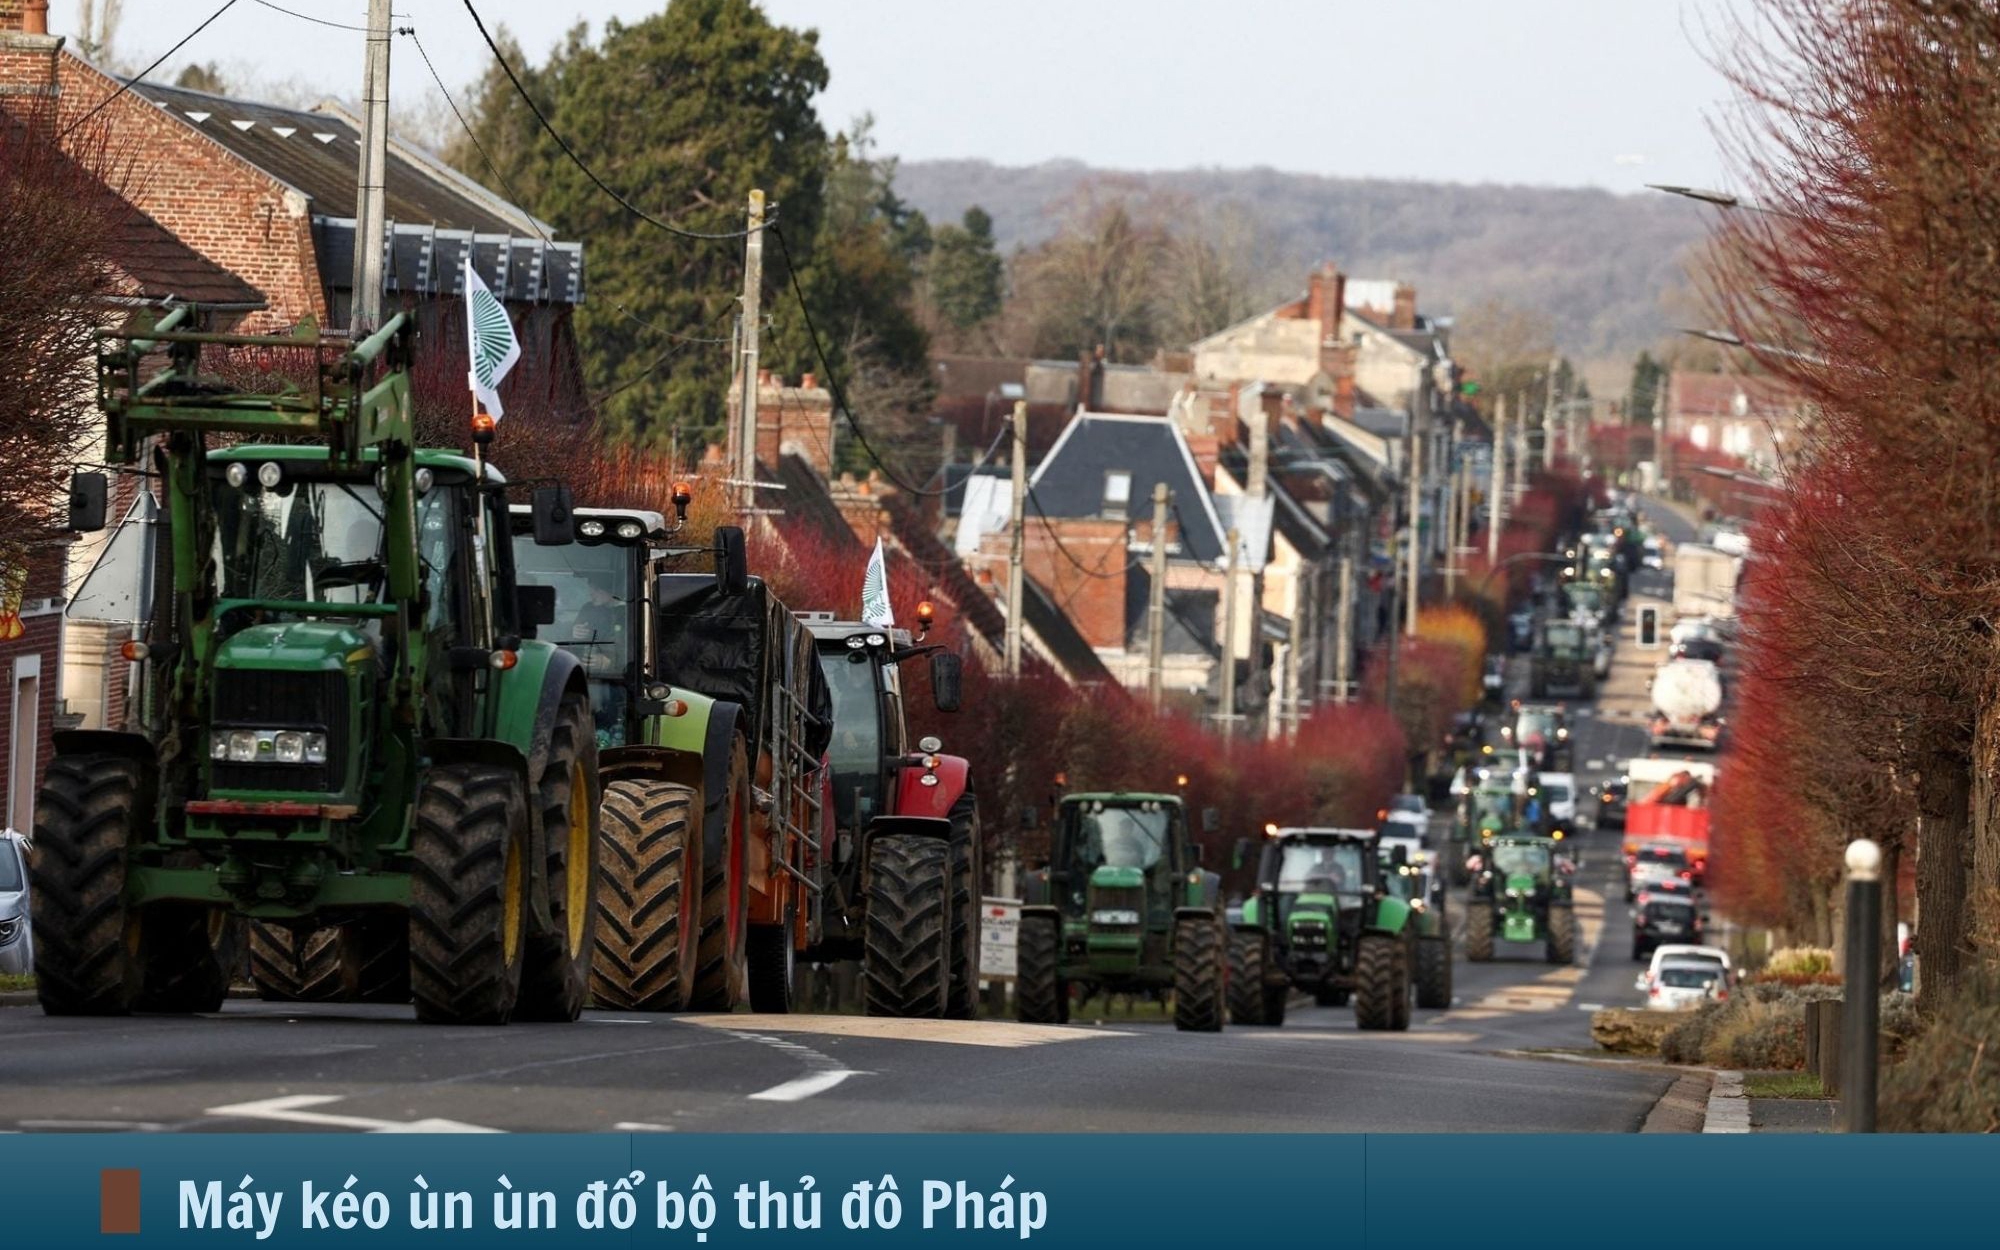 Hình ảnh báo chí 24h: Hàng nghìn máy kéo ùn ùn đổ bộ thủ đô nước Pháp